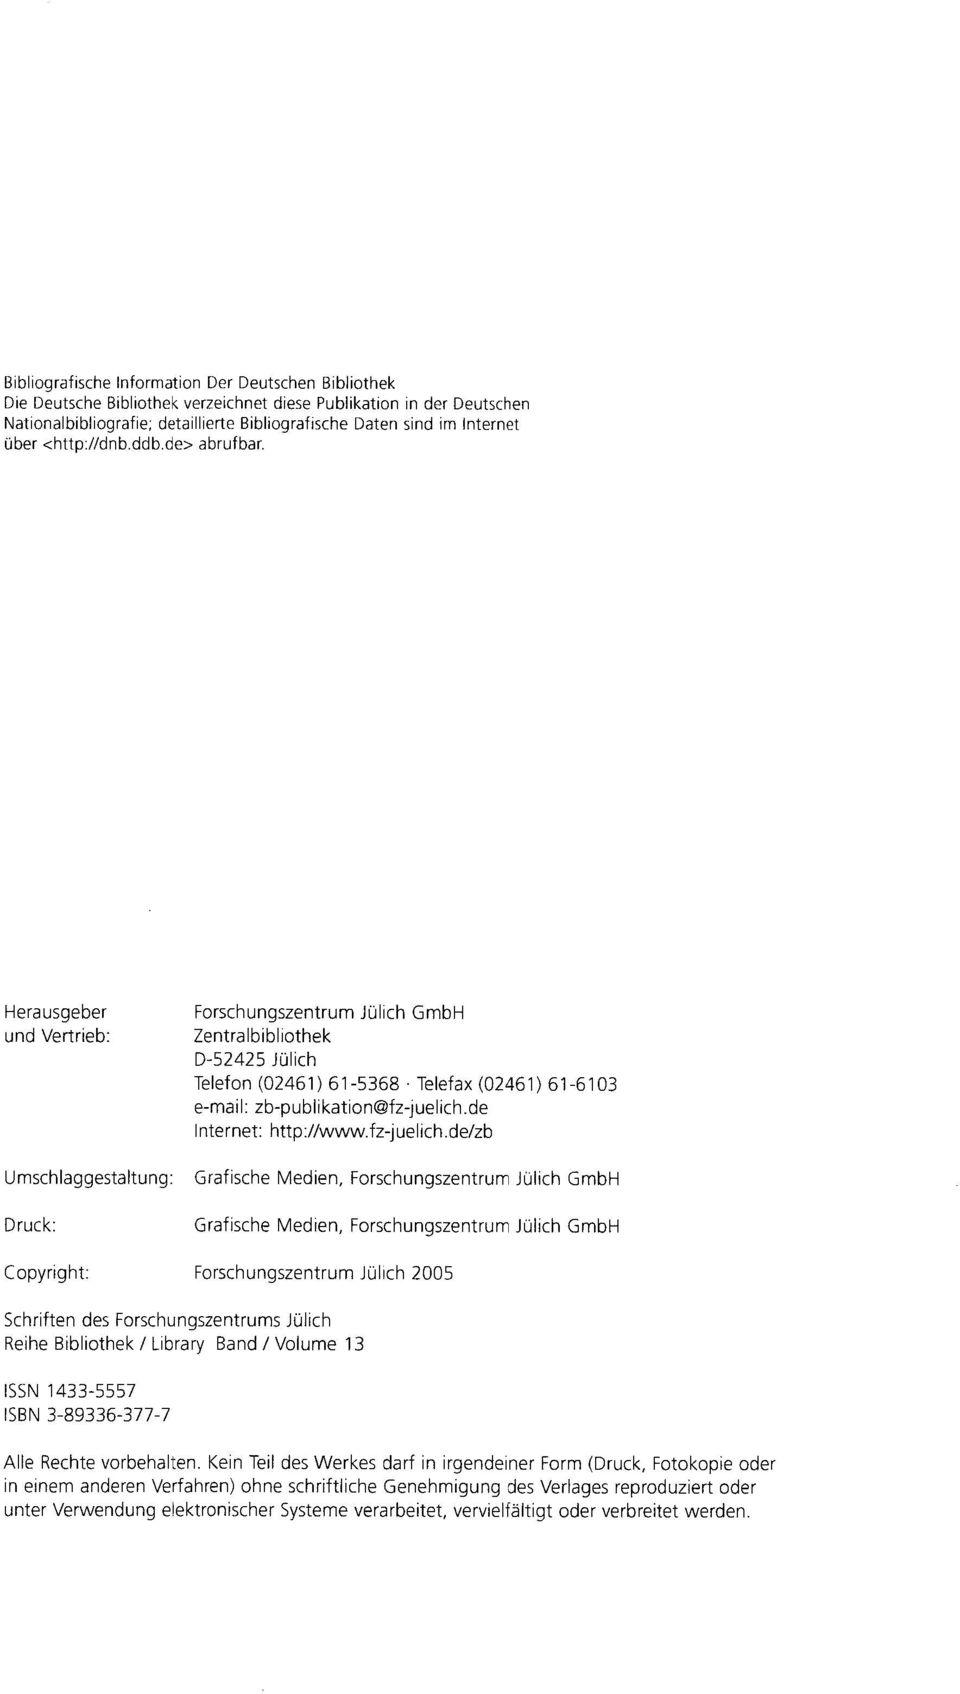 Herausgeber und Vertrieb : Forschungszentrum Jülich GmbH Zentralbibliothek D-52425 Jülich Telefon (02461) 61-5368 - Telefax (02461) 61-6103 e-mail : zb-publikation@fz-juelich.